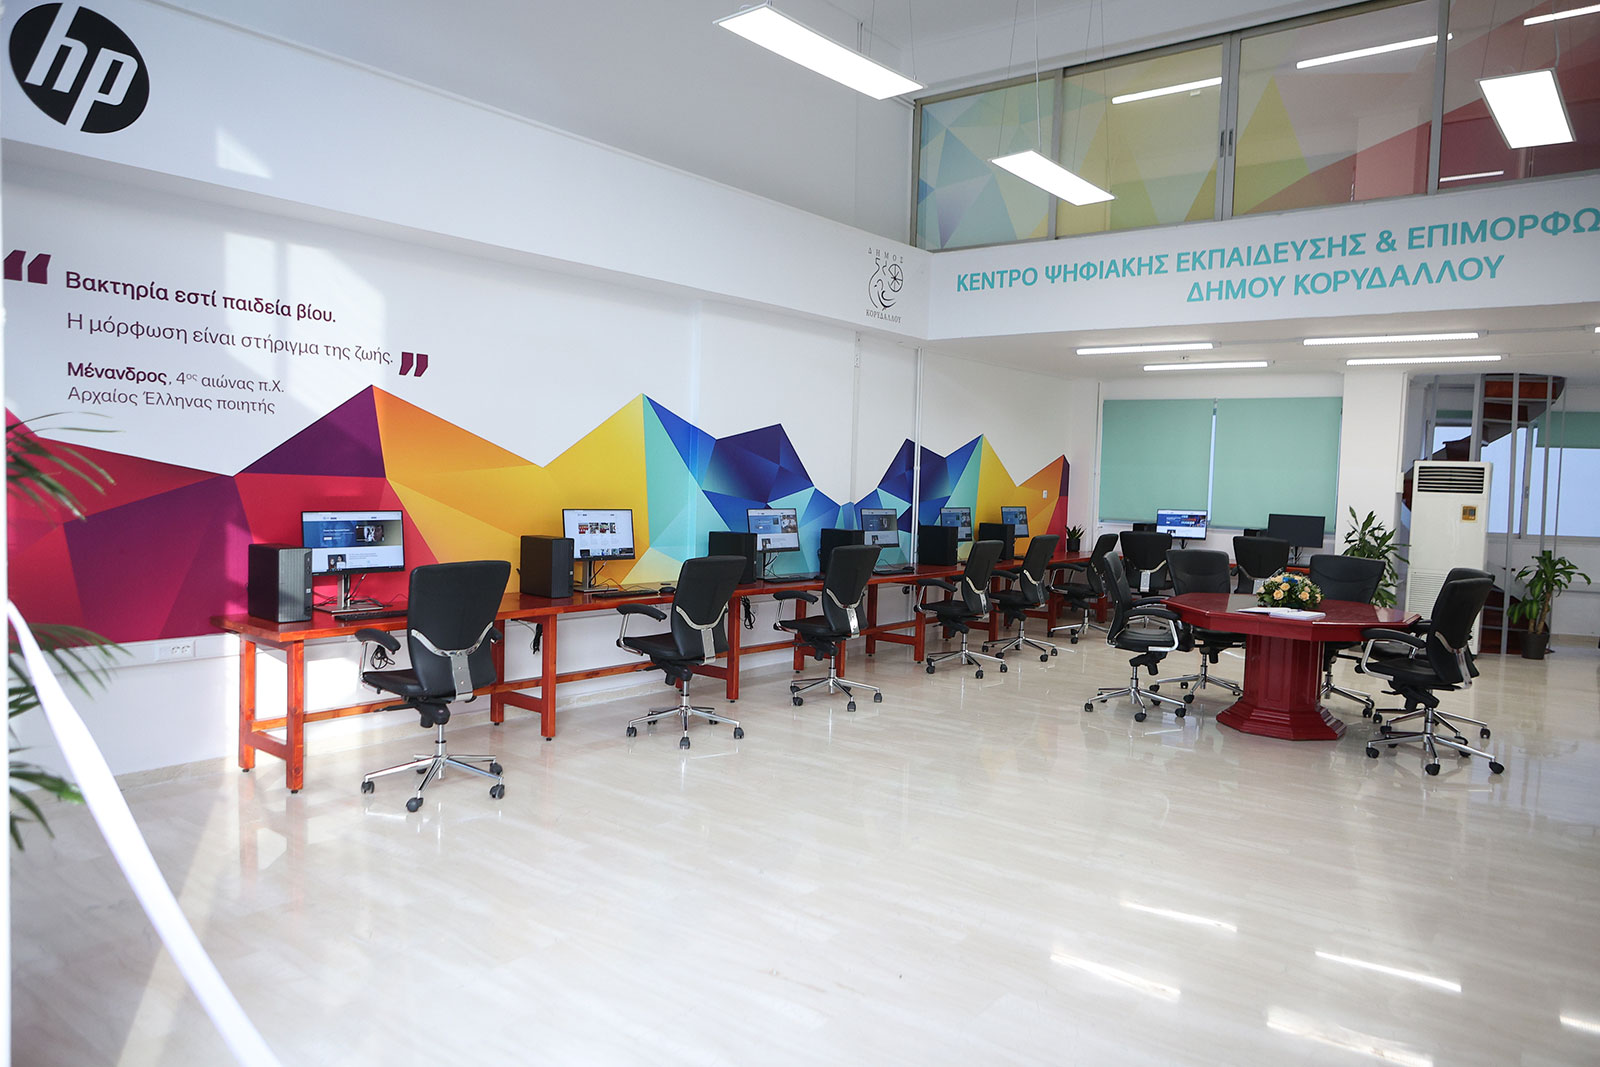 Ψηφιακό Σχολείο Κορυδαλλός, Το πρώτο «Ανοιχτό Ψηφιακό Σχολείου για Όλους» στον Κορυδαλλό